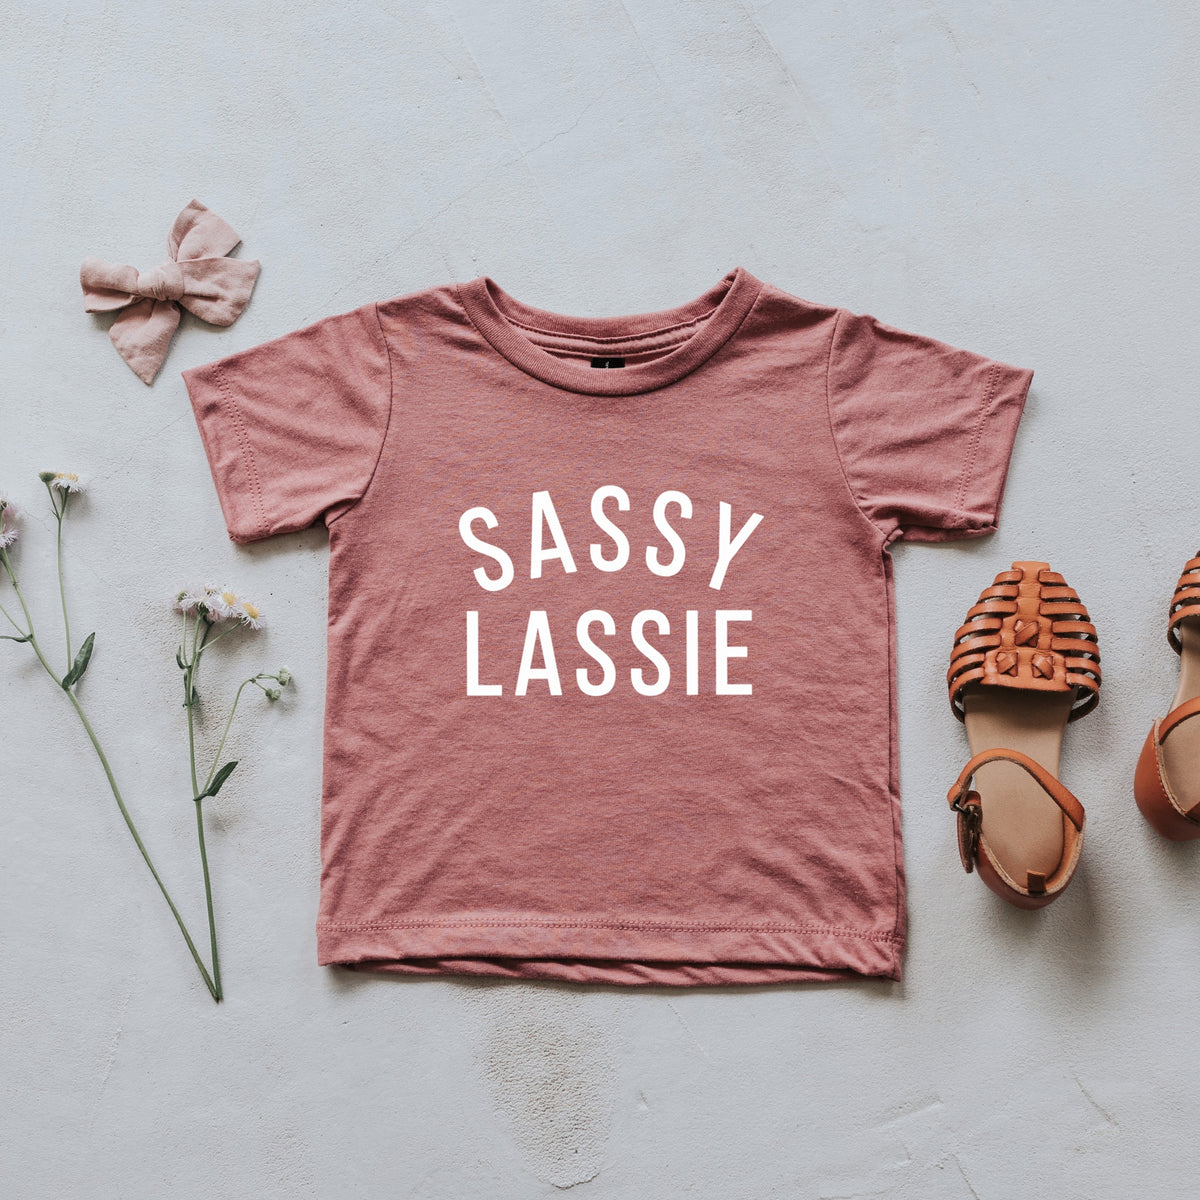 Sassy Lassy Tee - Mauve